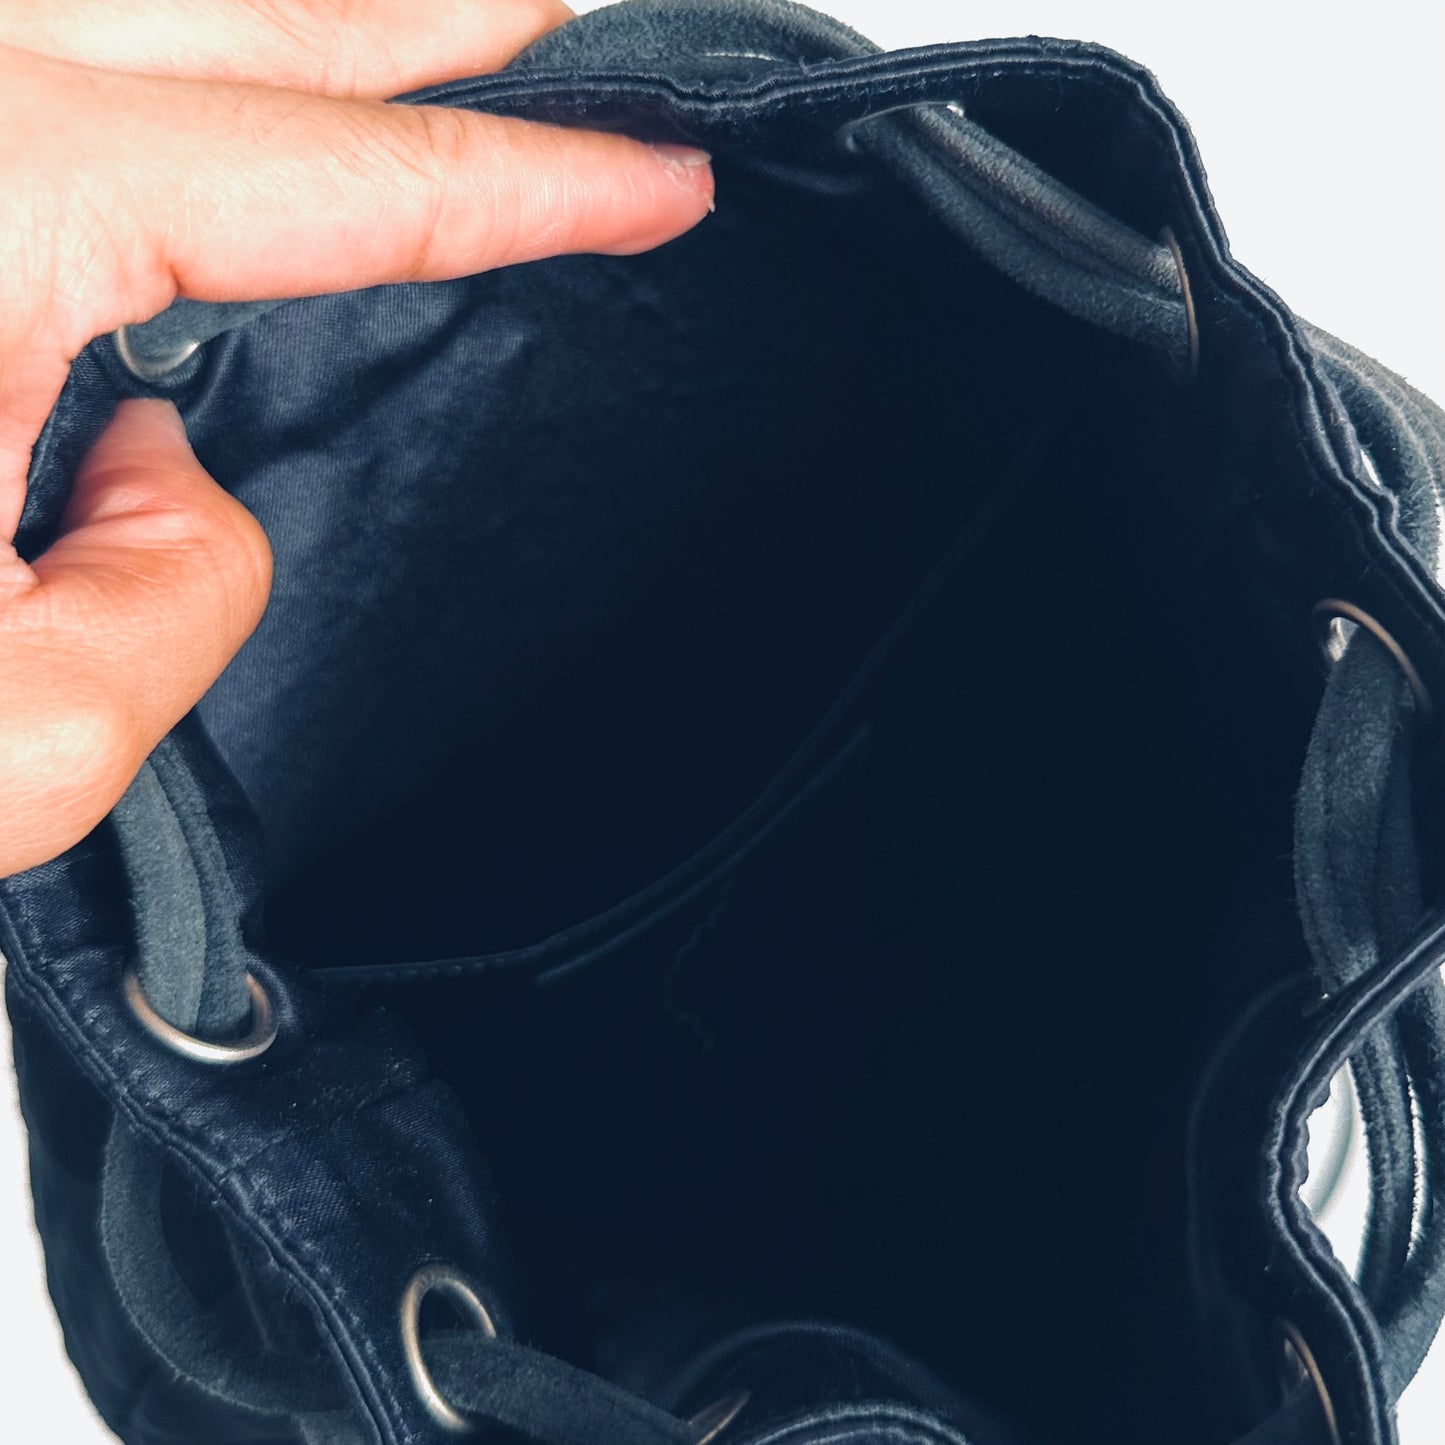 Chanel CC Navy Blue Monogram Logo Quilted Velvet Satin & Suede Bucket Drawstring Backpack Vintage Shoulder Sling Bag 6s